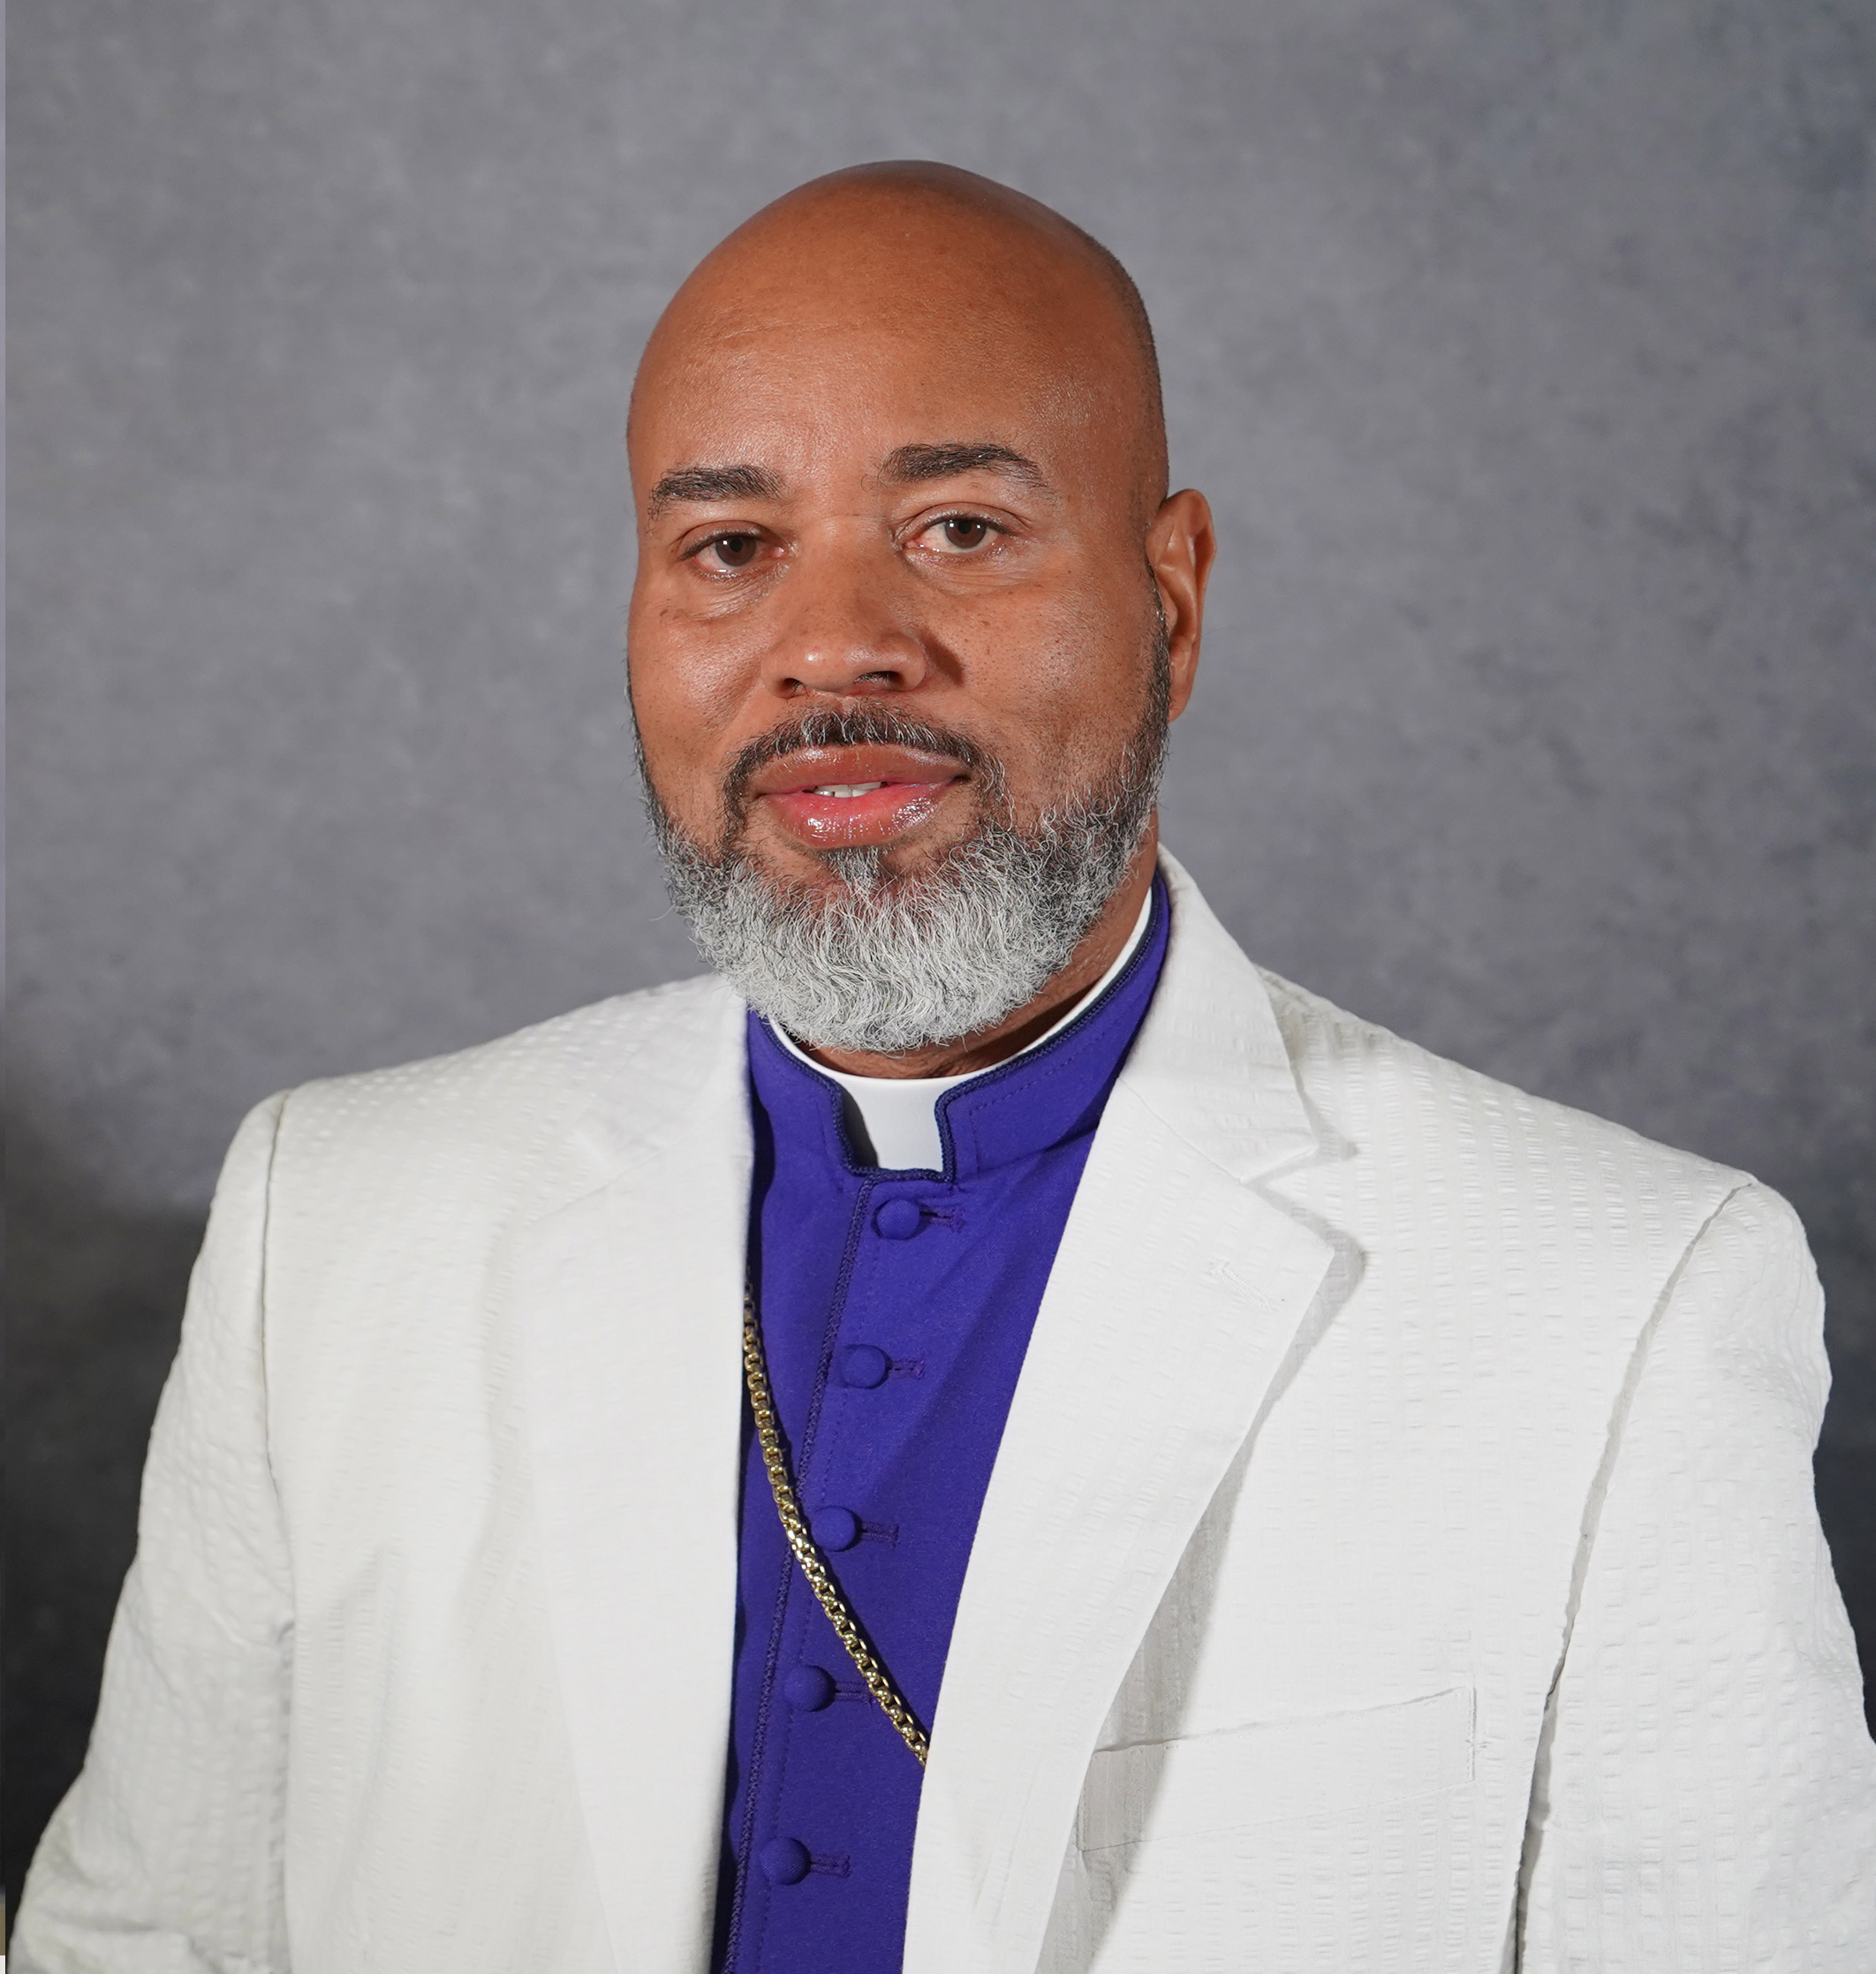 Bishop Dwayne Mason